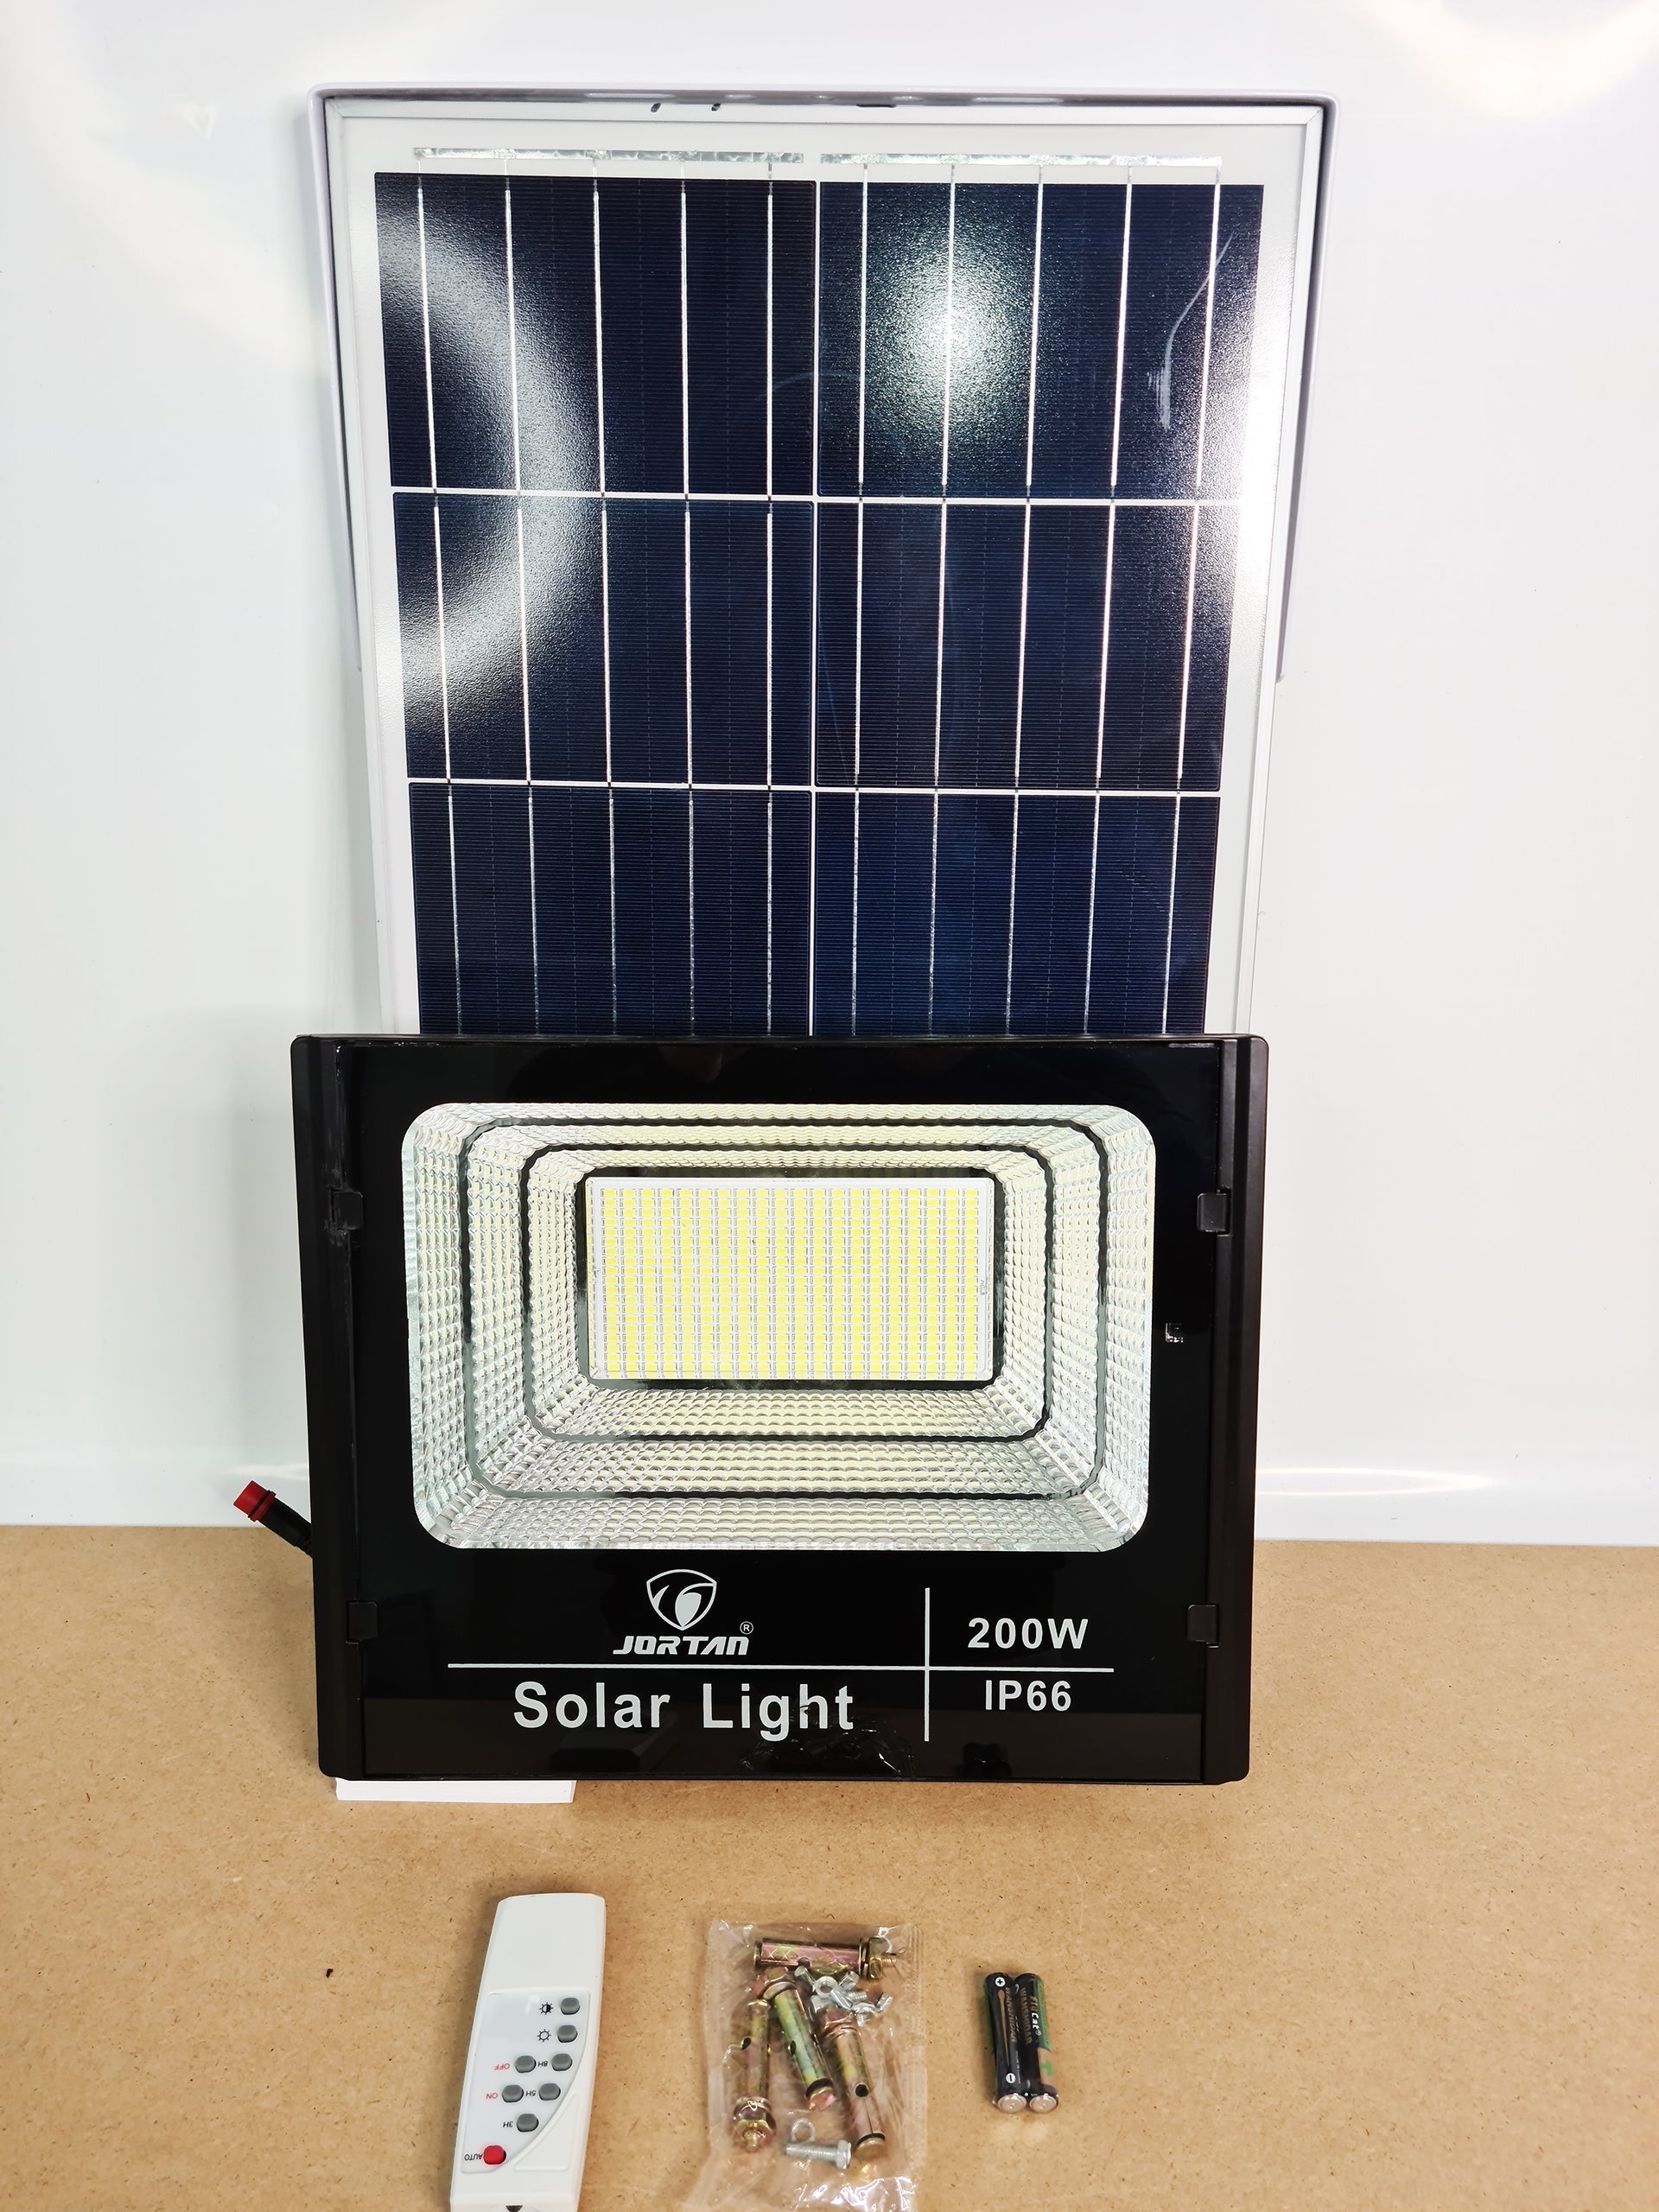 Proiector Solar Jortan 100W, Lampa Incarcare Solara + Panou Solar